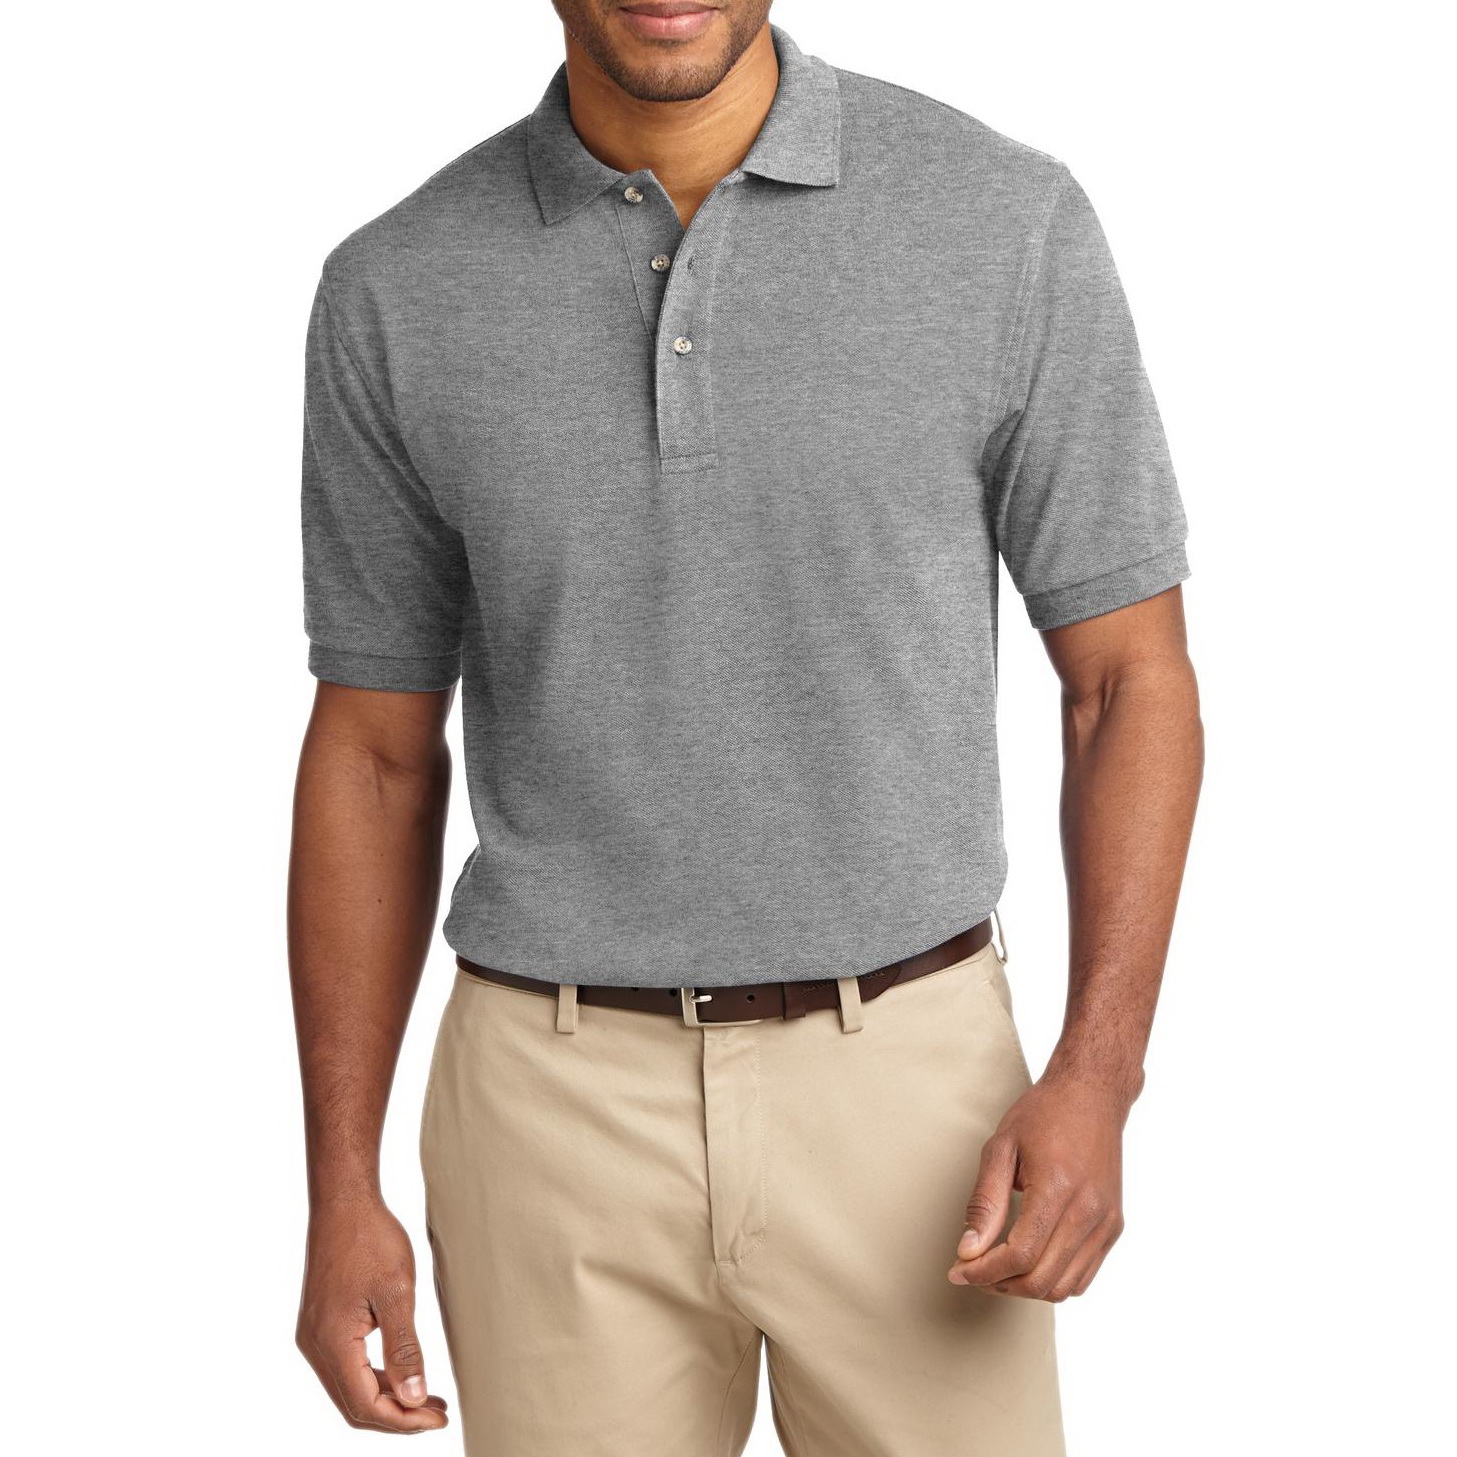 Heavyweight Cotton Pique Polo Shirt